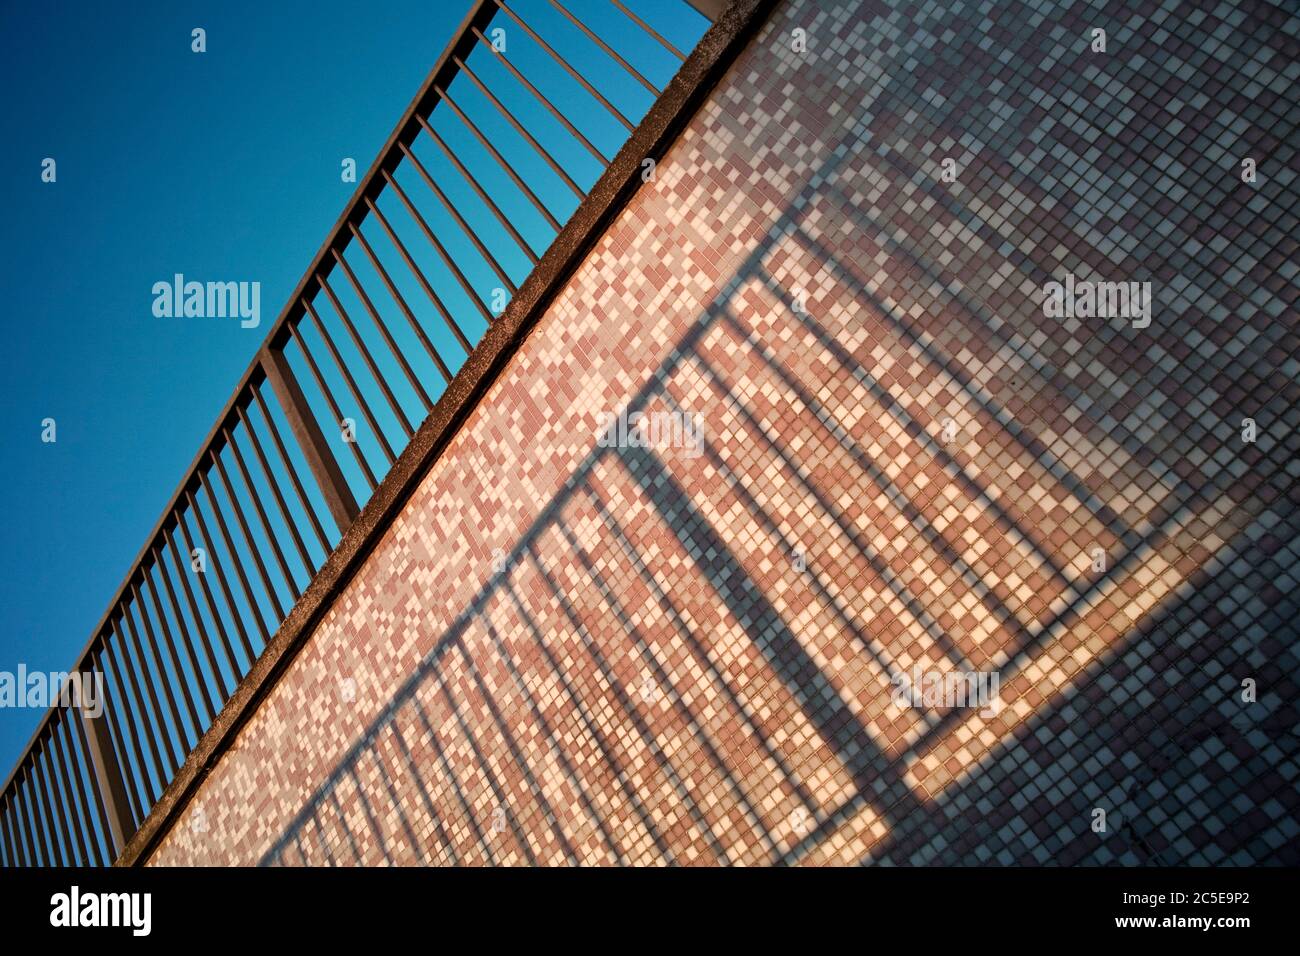 Ringhiere stradali e muro della metropolitana con cielo blu chiaro Foto Stock